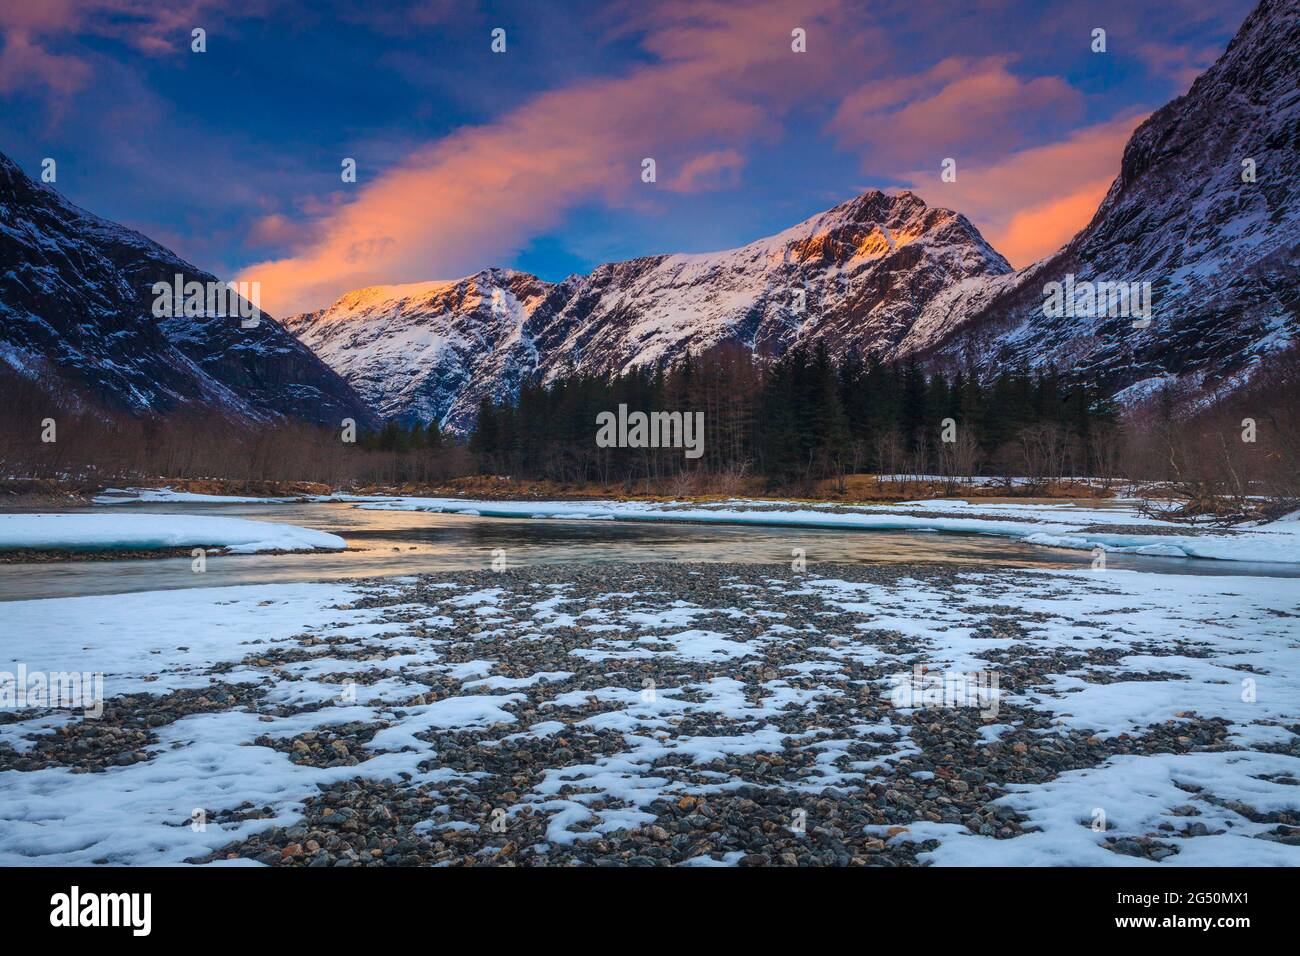 Paysage de l'heure d'or avec un ciel, une montagne et une neige colorés lors d'une soirée d'hiver dans la vallée de Romsdalen, Rauma kommune, Møre og Romsdal, Norvège, Scandinavie. Banque D'Images